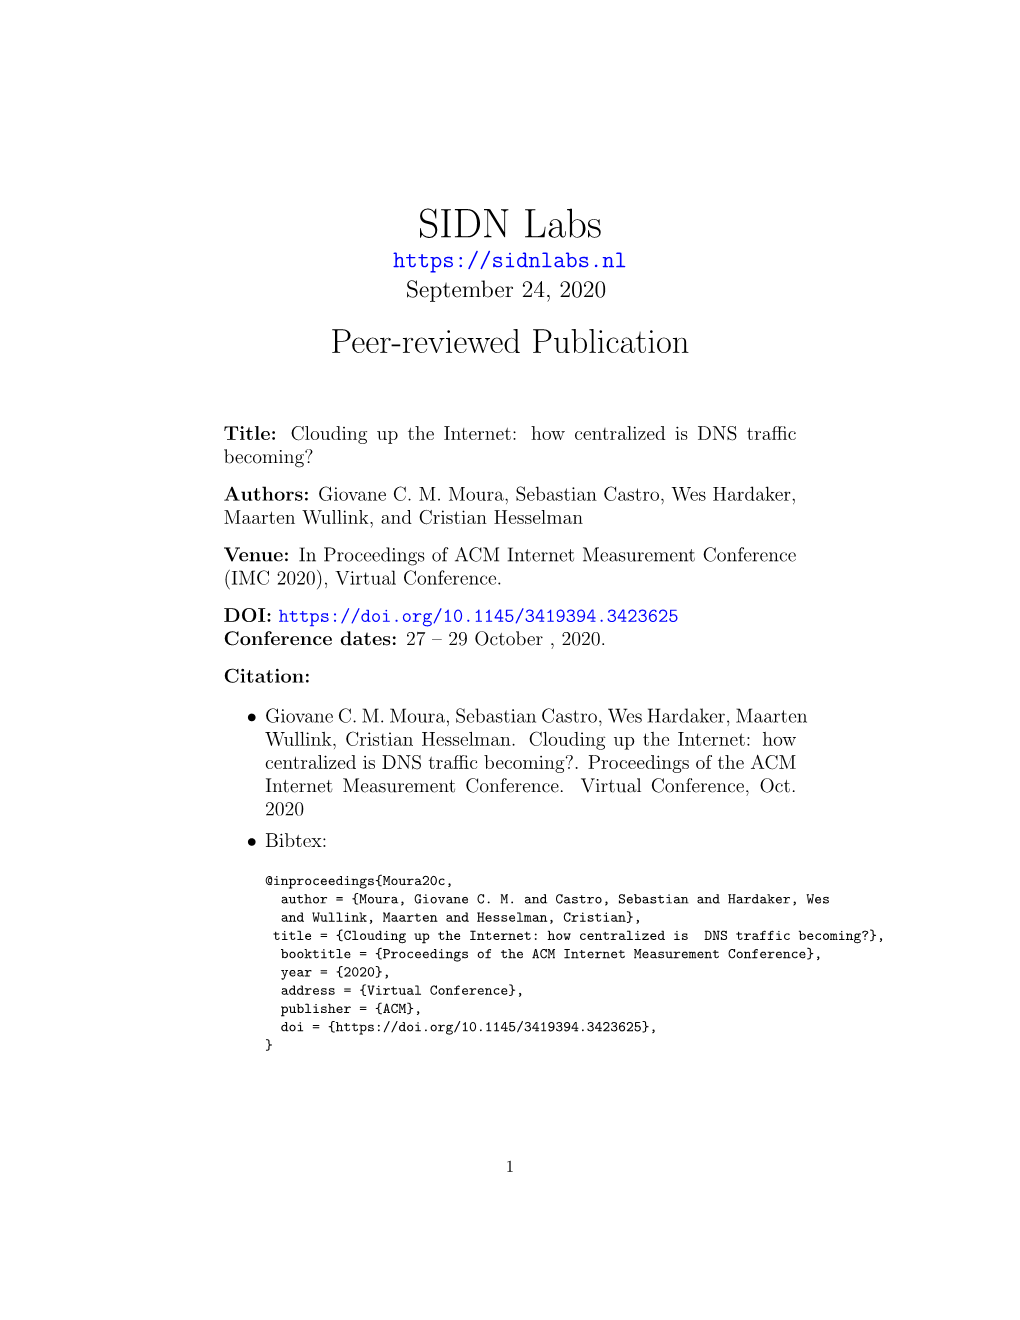 SIDN Labs September 24, 2020 Peer-Reviewed Publication